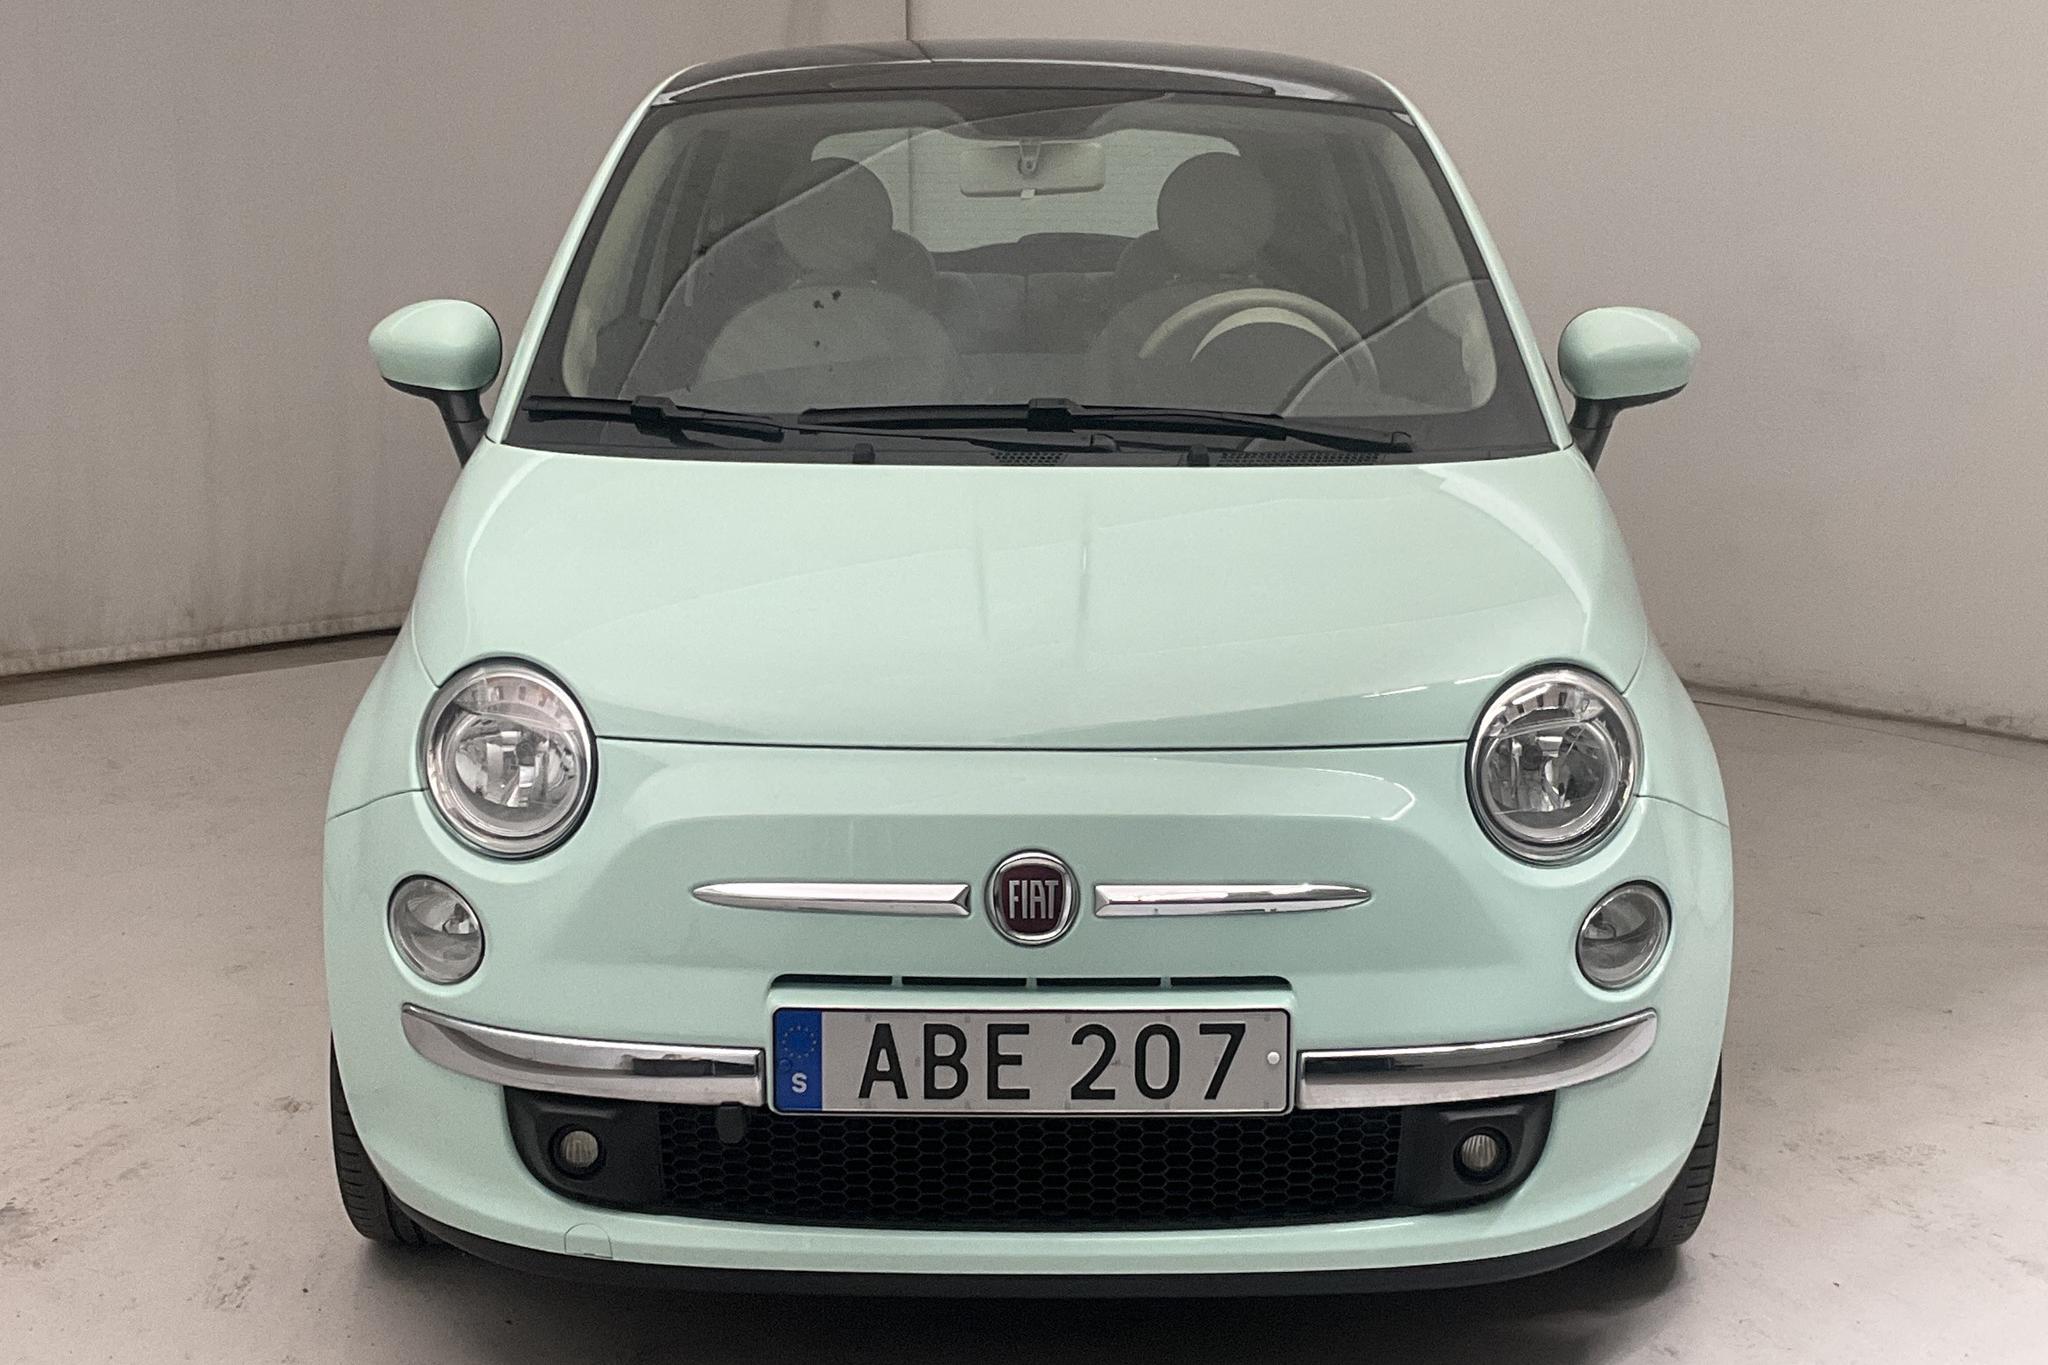 Fiat 500 1.2 (69hk) - 5 779 mil - Manuell - grön - 2014